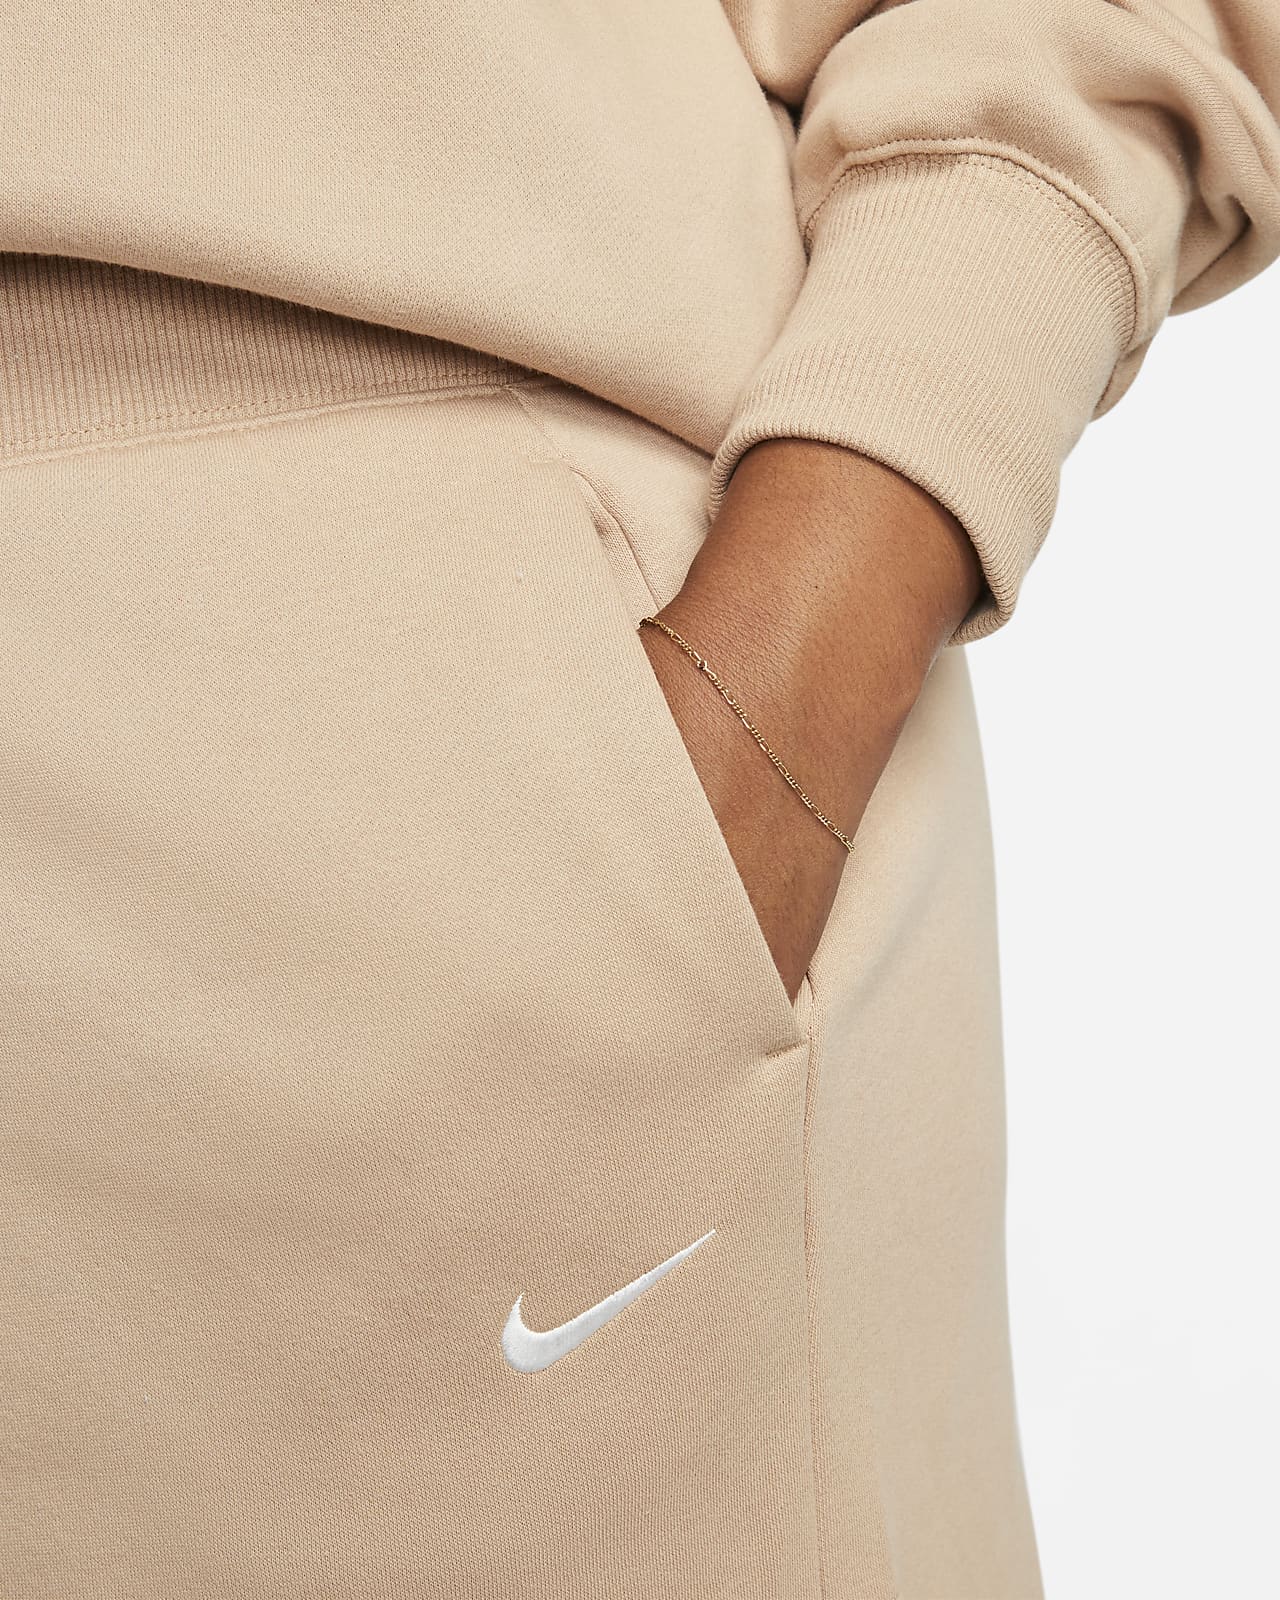 Nike Women's Sportswear Phoenix Fleece High-Waisted Curve